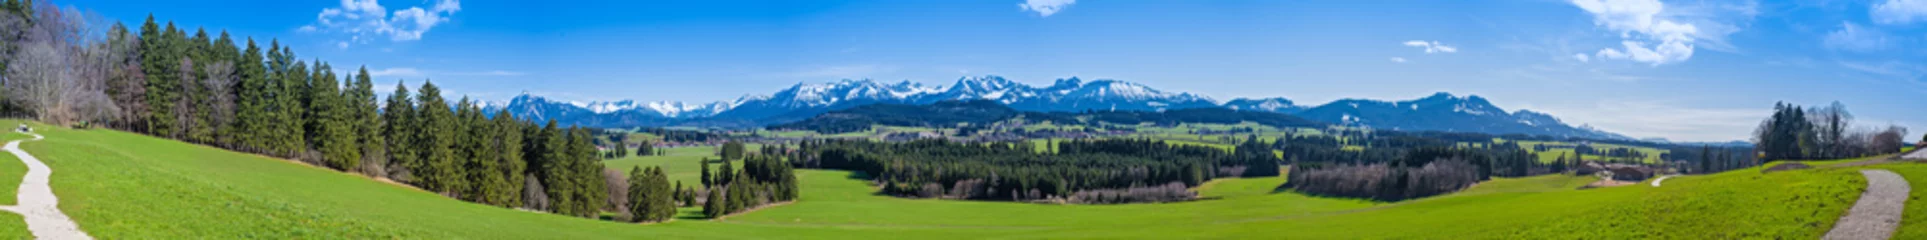 Fotobehang Wandelpad door de Allgäu met uitzicht op de Alpen - panorama in hoge resolutie © reichdernatur